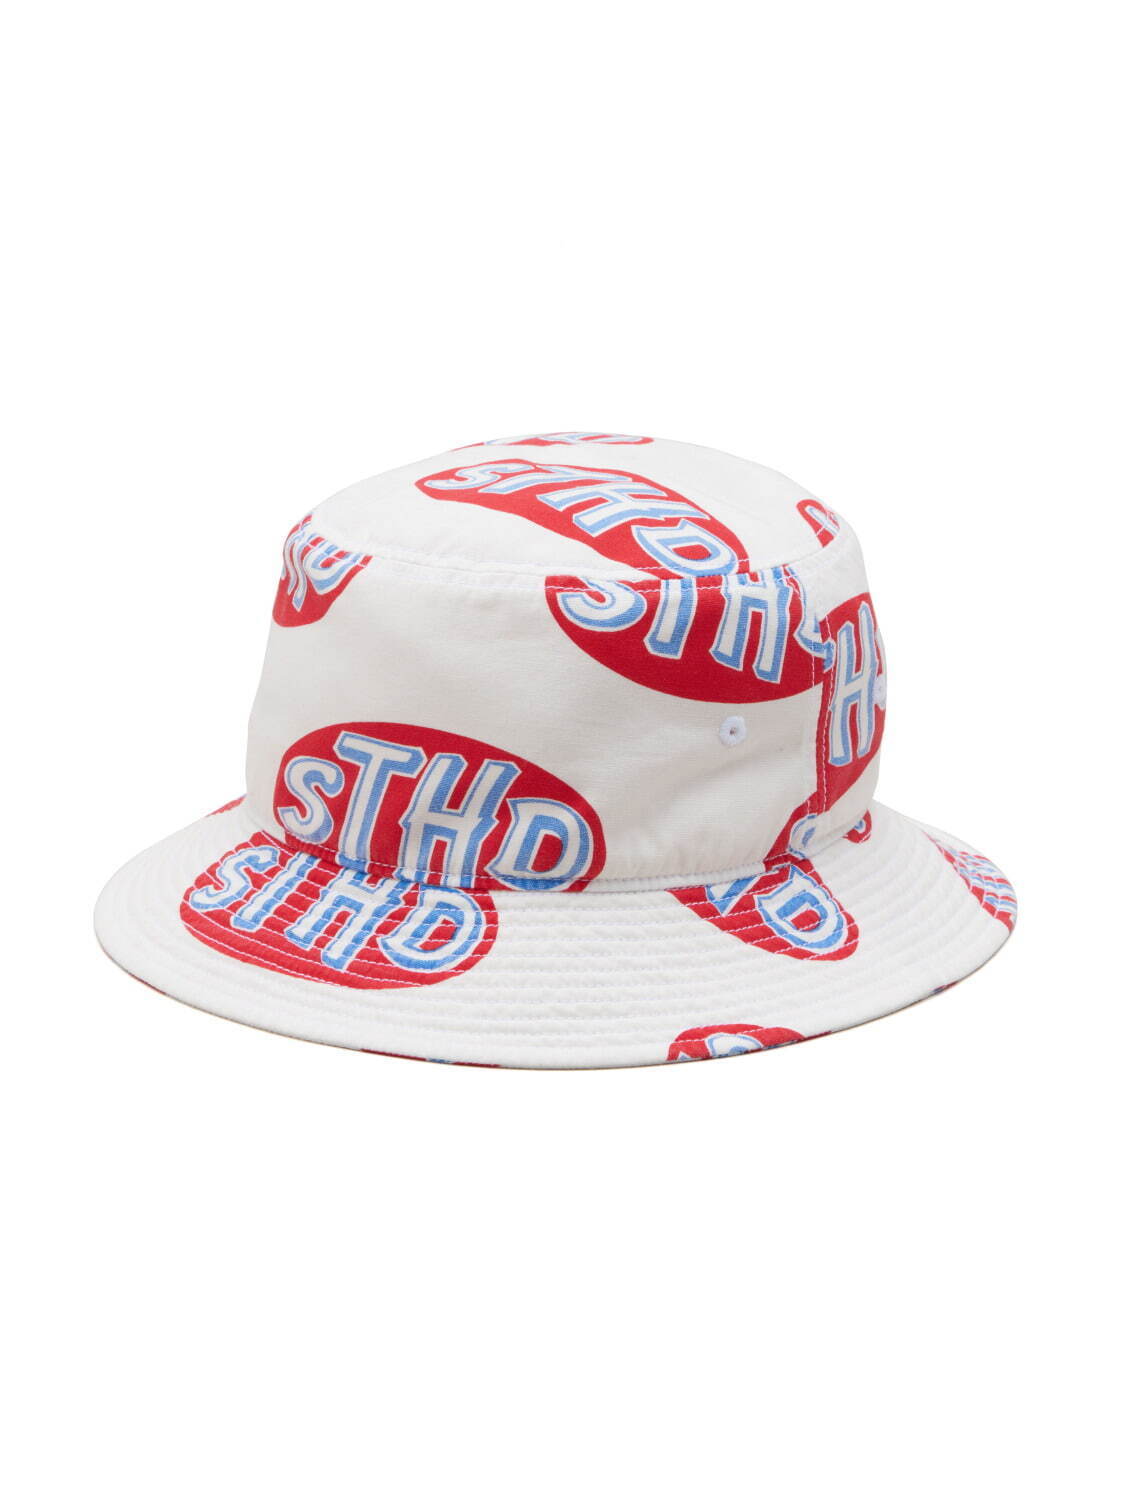 STHD BUCKET HAT 14,300円